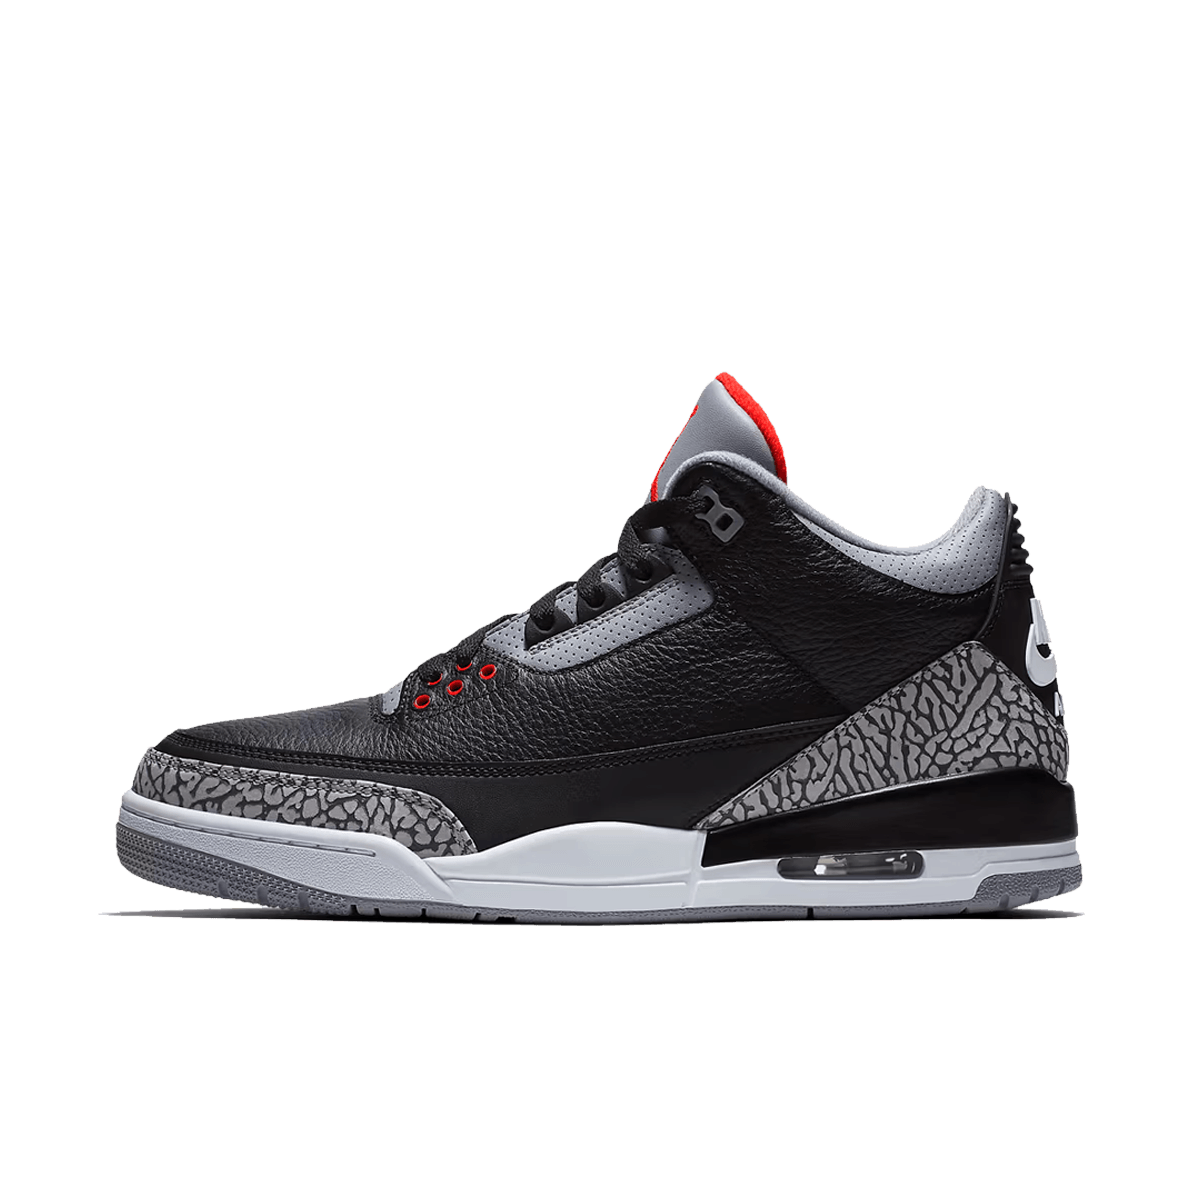 Air Jordan 3 Retro 'Black Cement' DN3707-010